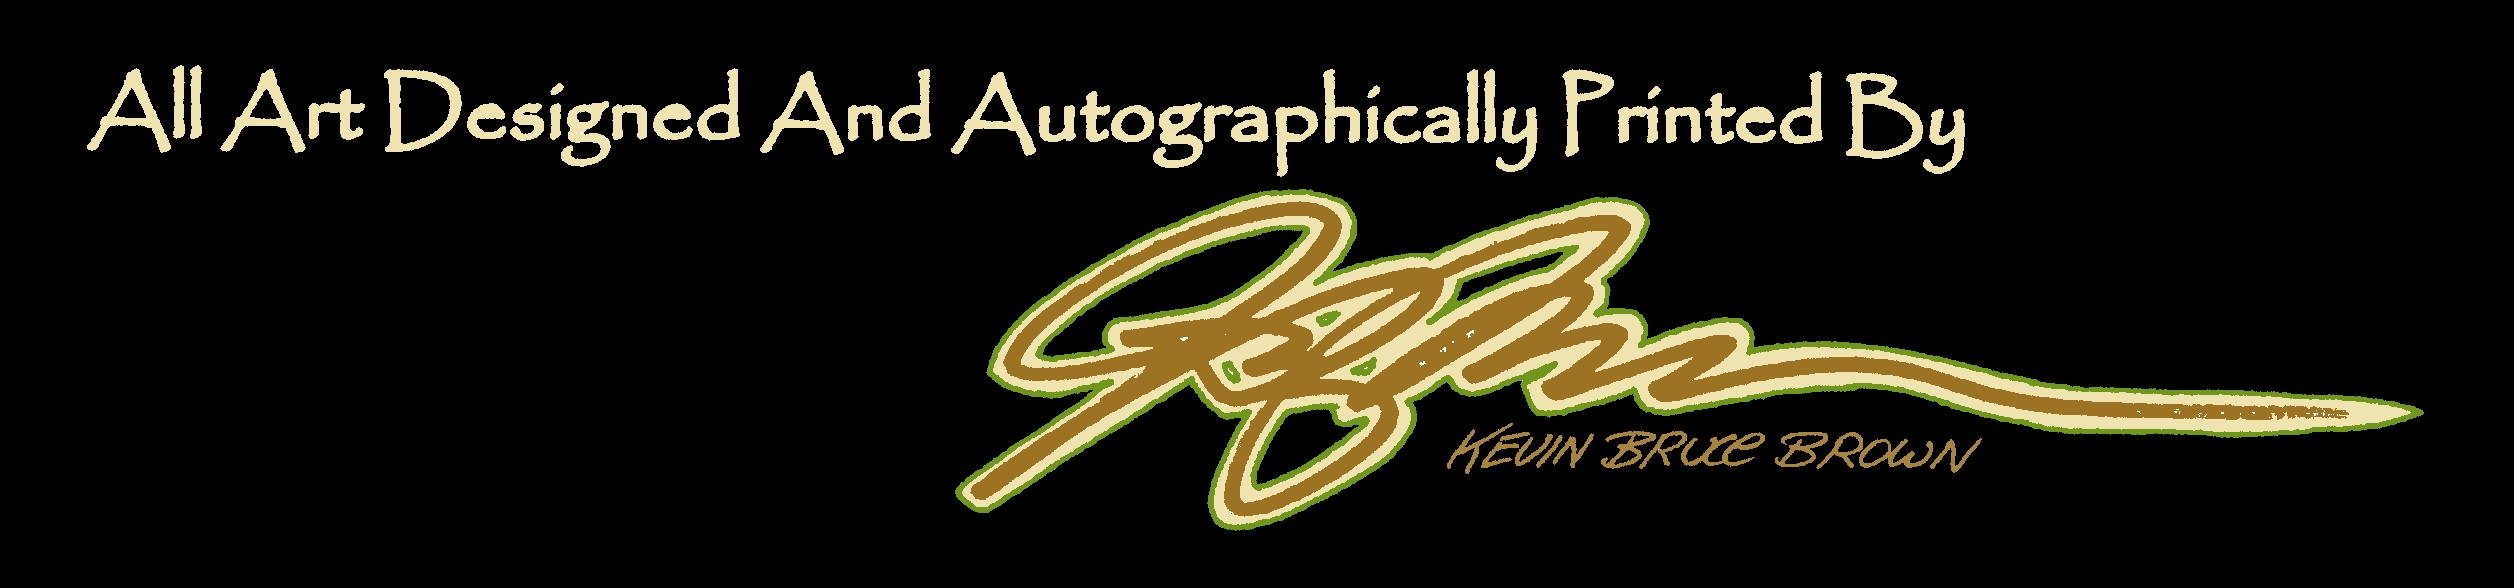 autograph banner color on black